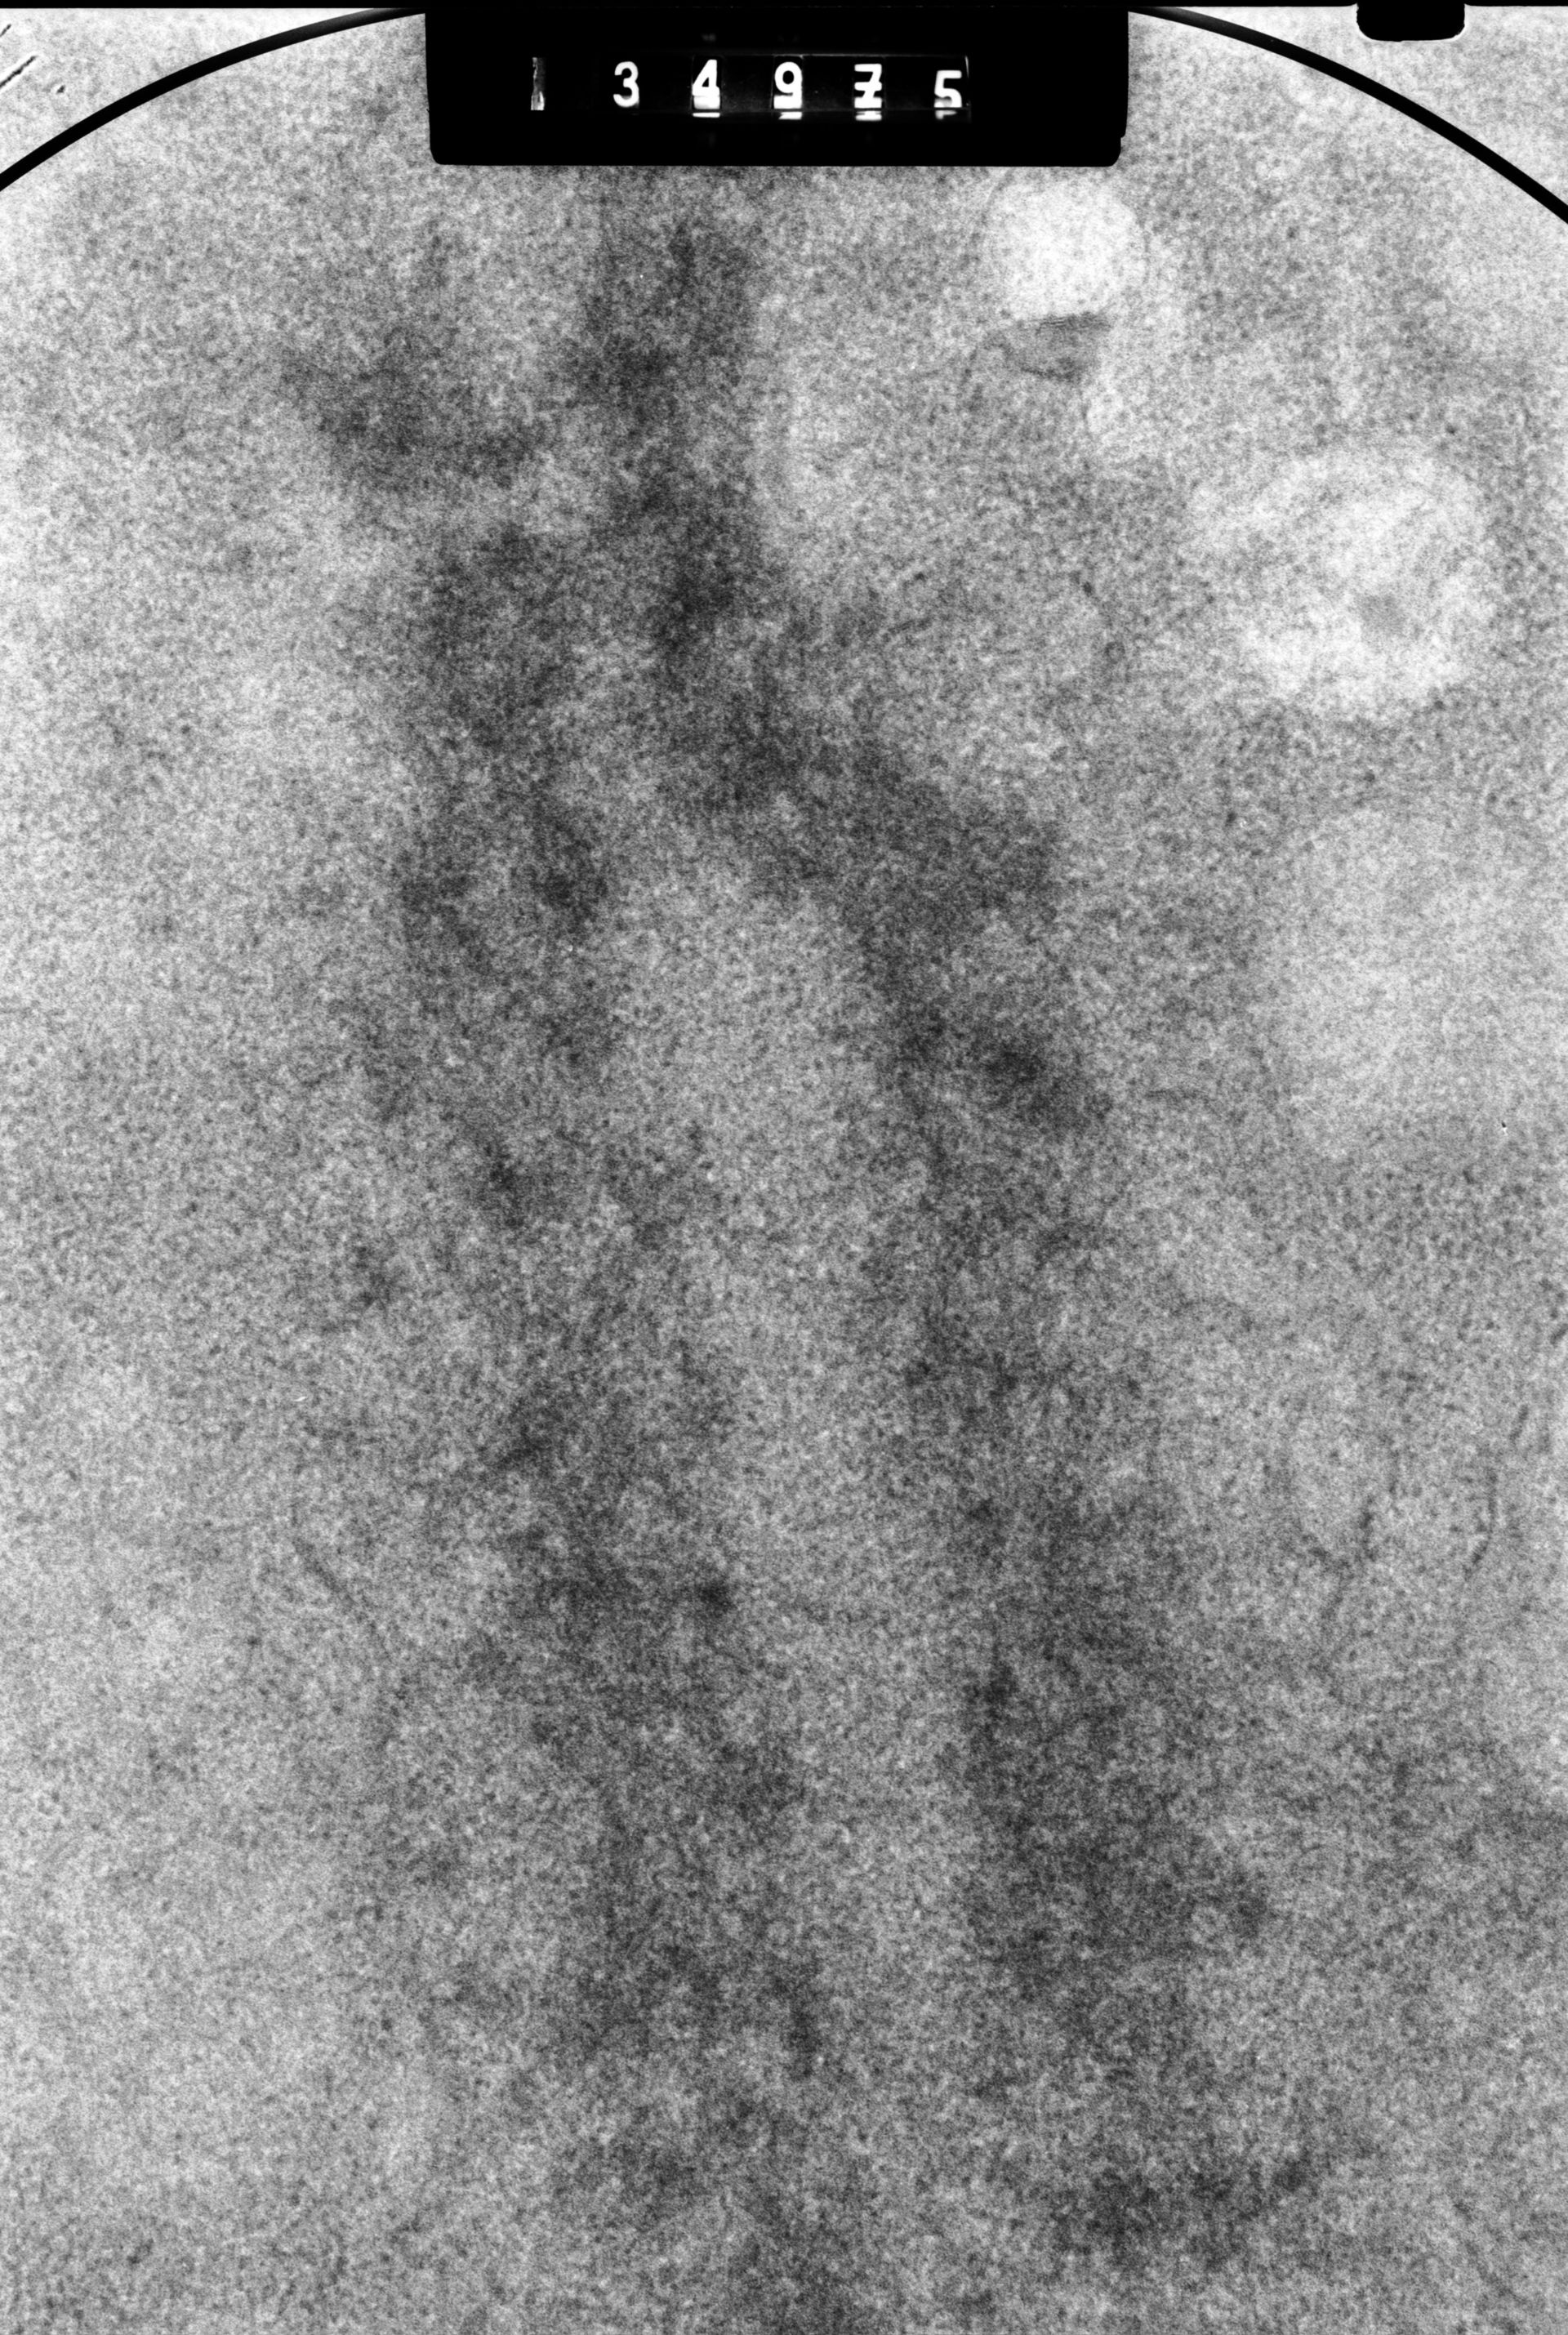 Cricetulus griseus (Nuclear chromosome) - CIL:41731